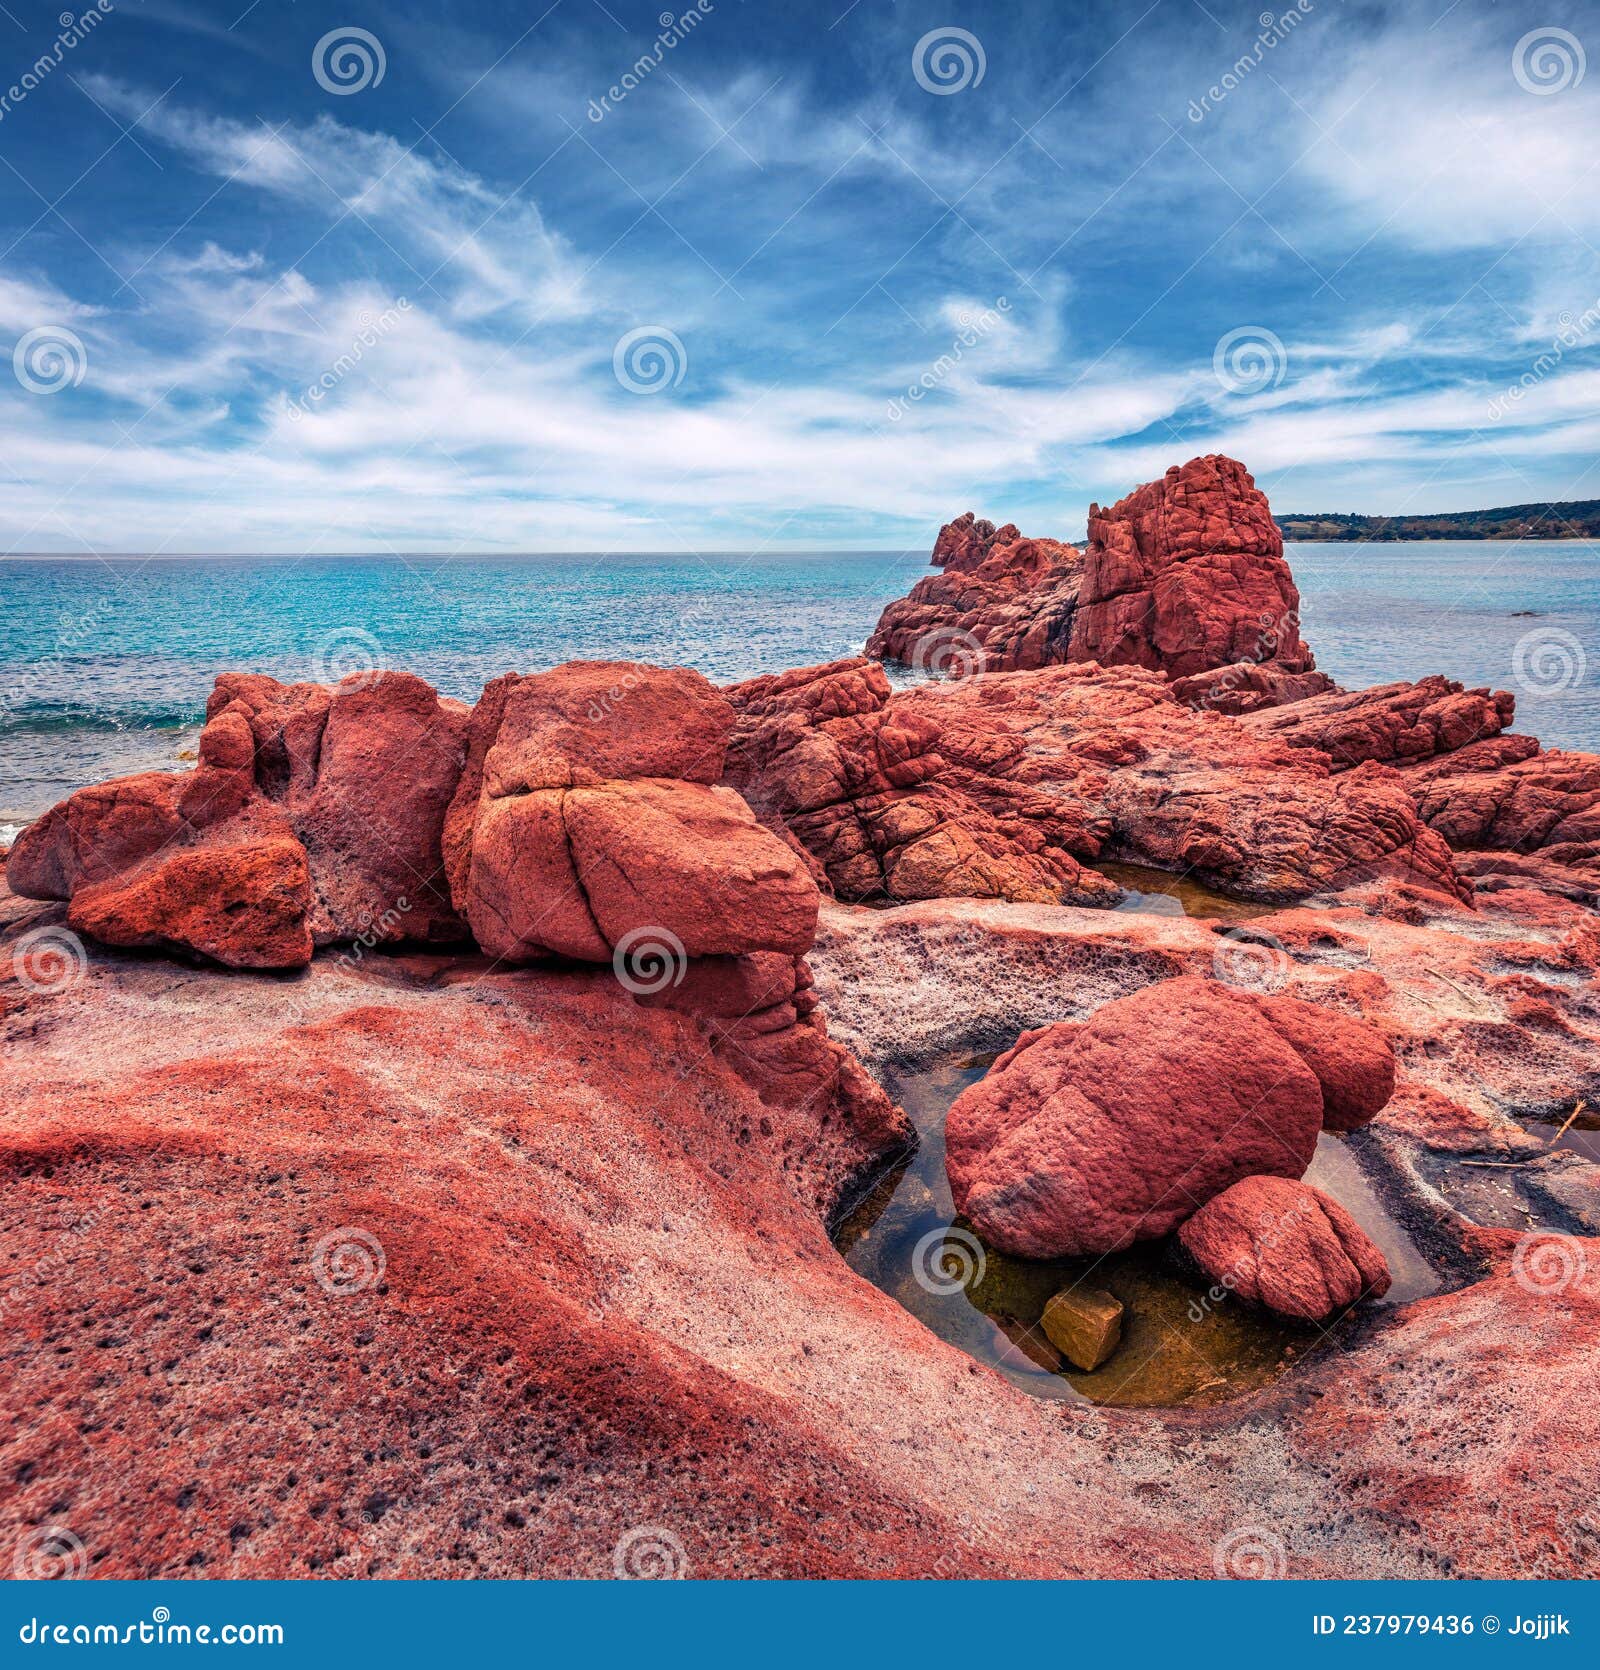 exotic red rocks gli scogli rossi - faraglioni cliffs on di cea beach.